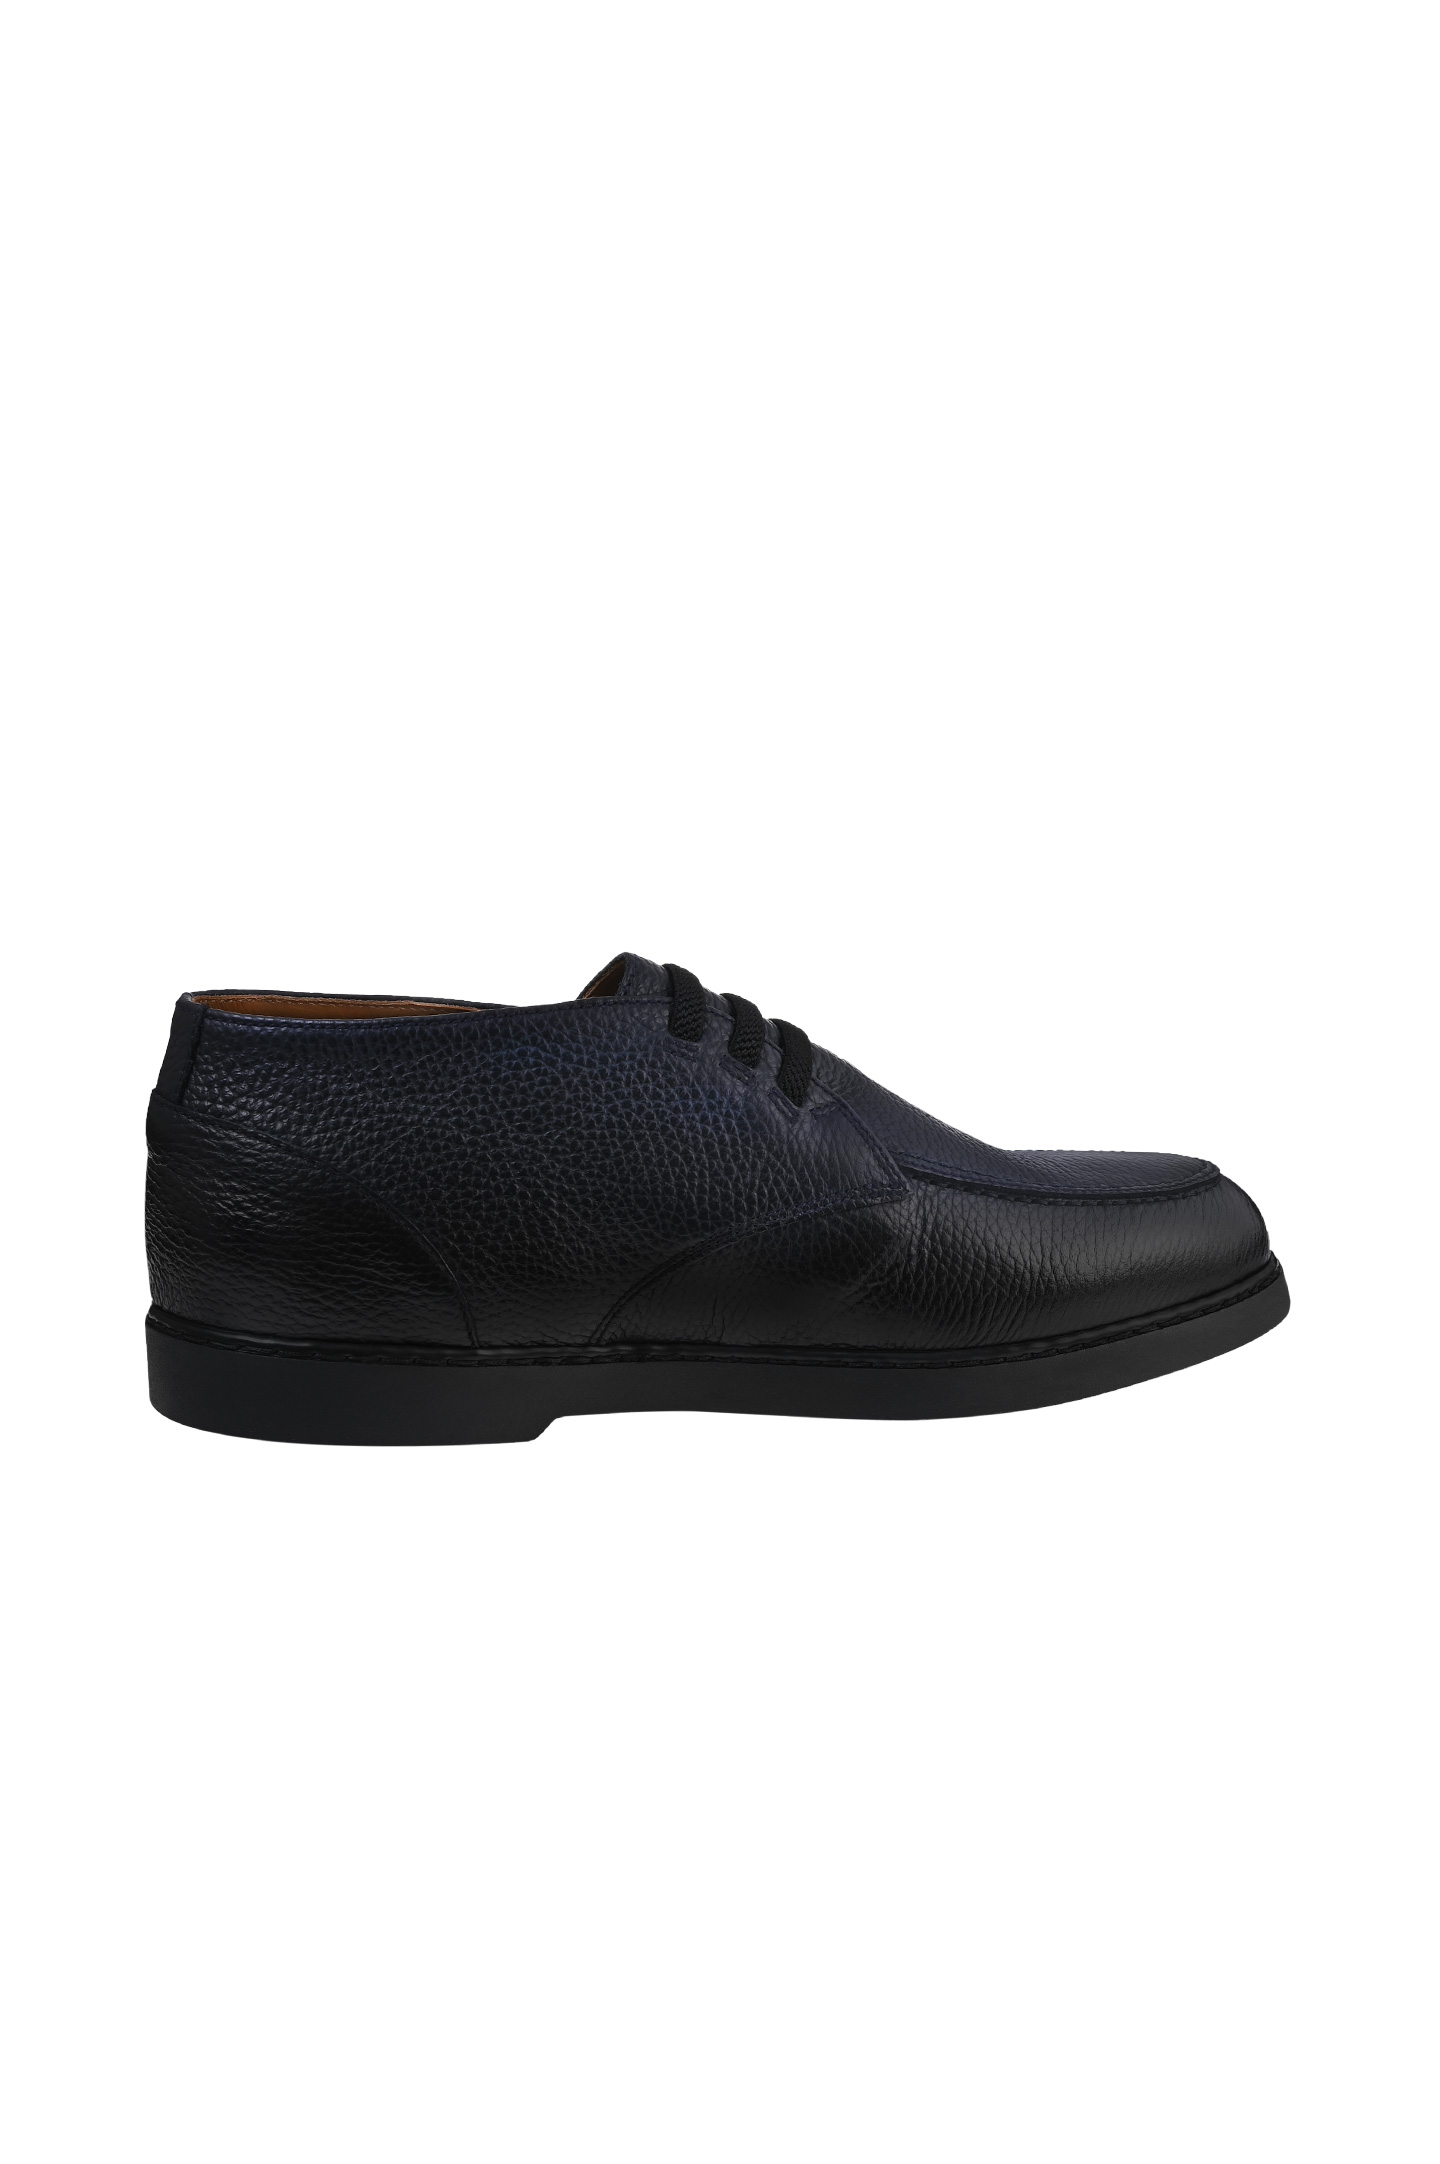 Туфли DOUCAL'S DU3235EDO-UF019, цвет: Черный, Мужской